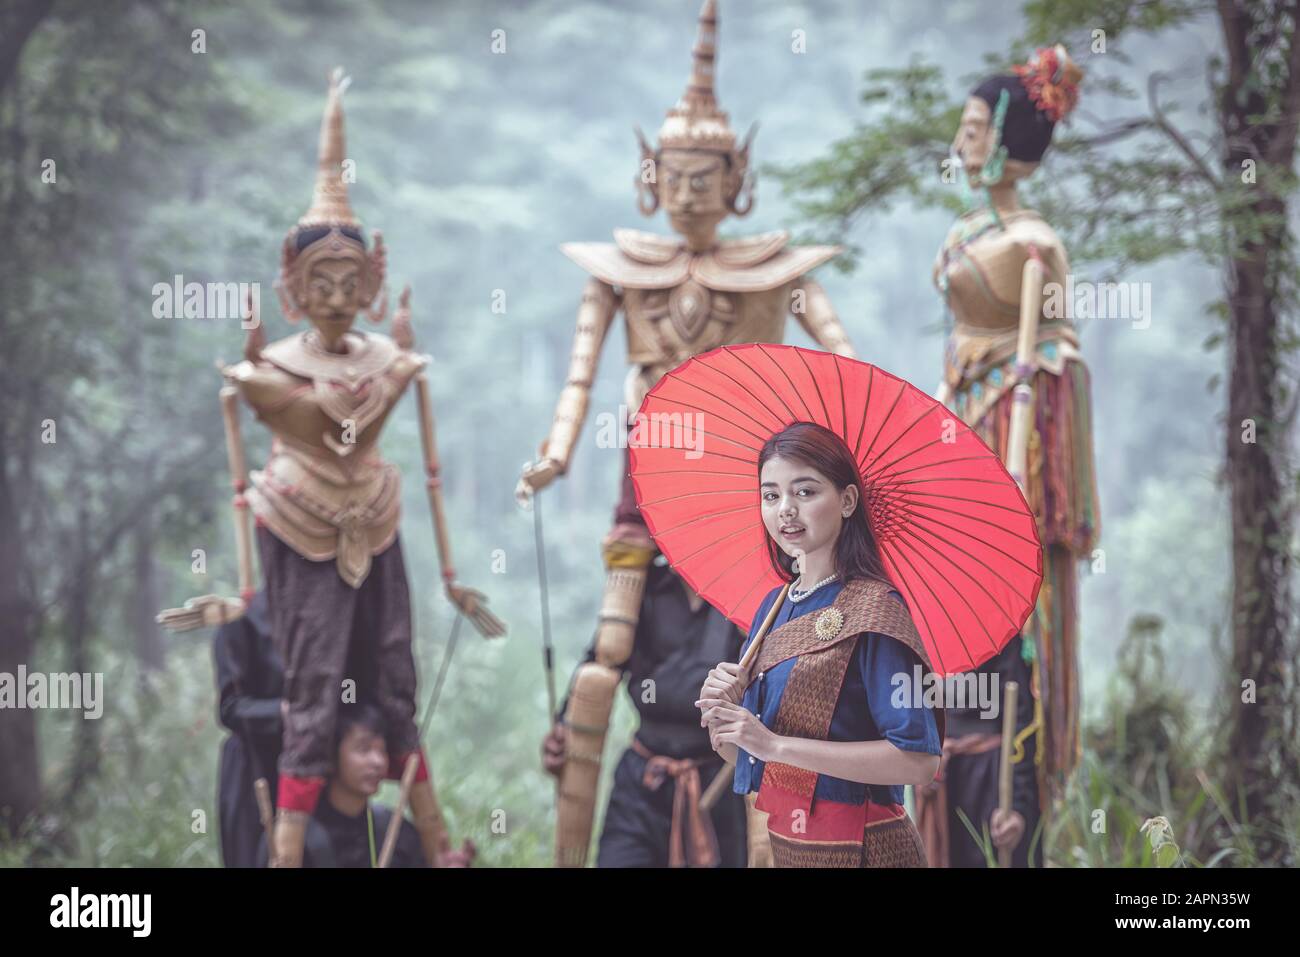 Marionnettes traditionnelles thaïlandaises d'arts et de culture. Spectacle de marionnettes pour filles asiatiques joignez-vous à la main tenant des poupées de marionnettes traditionnelles de style thaïlandais avec un costume élégant Banque D'Images